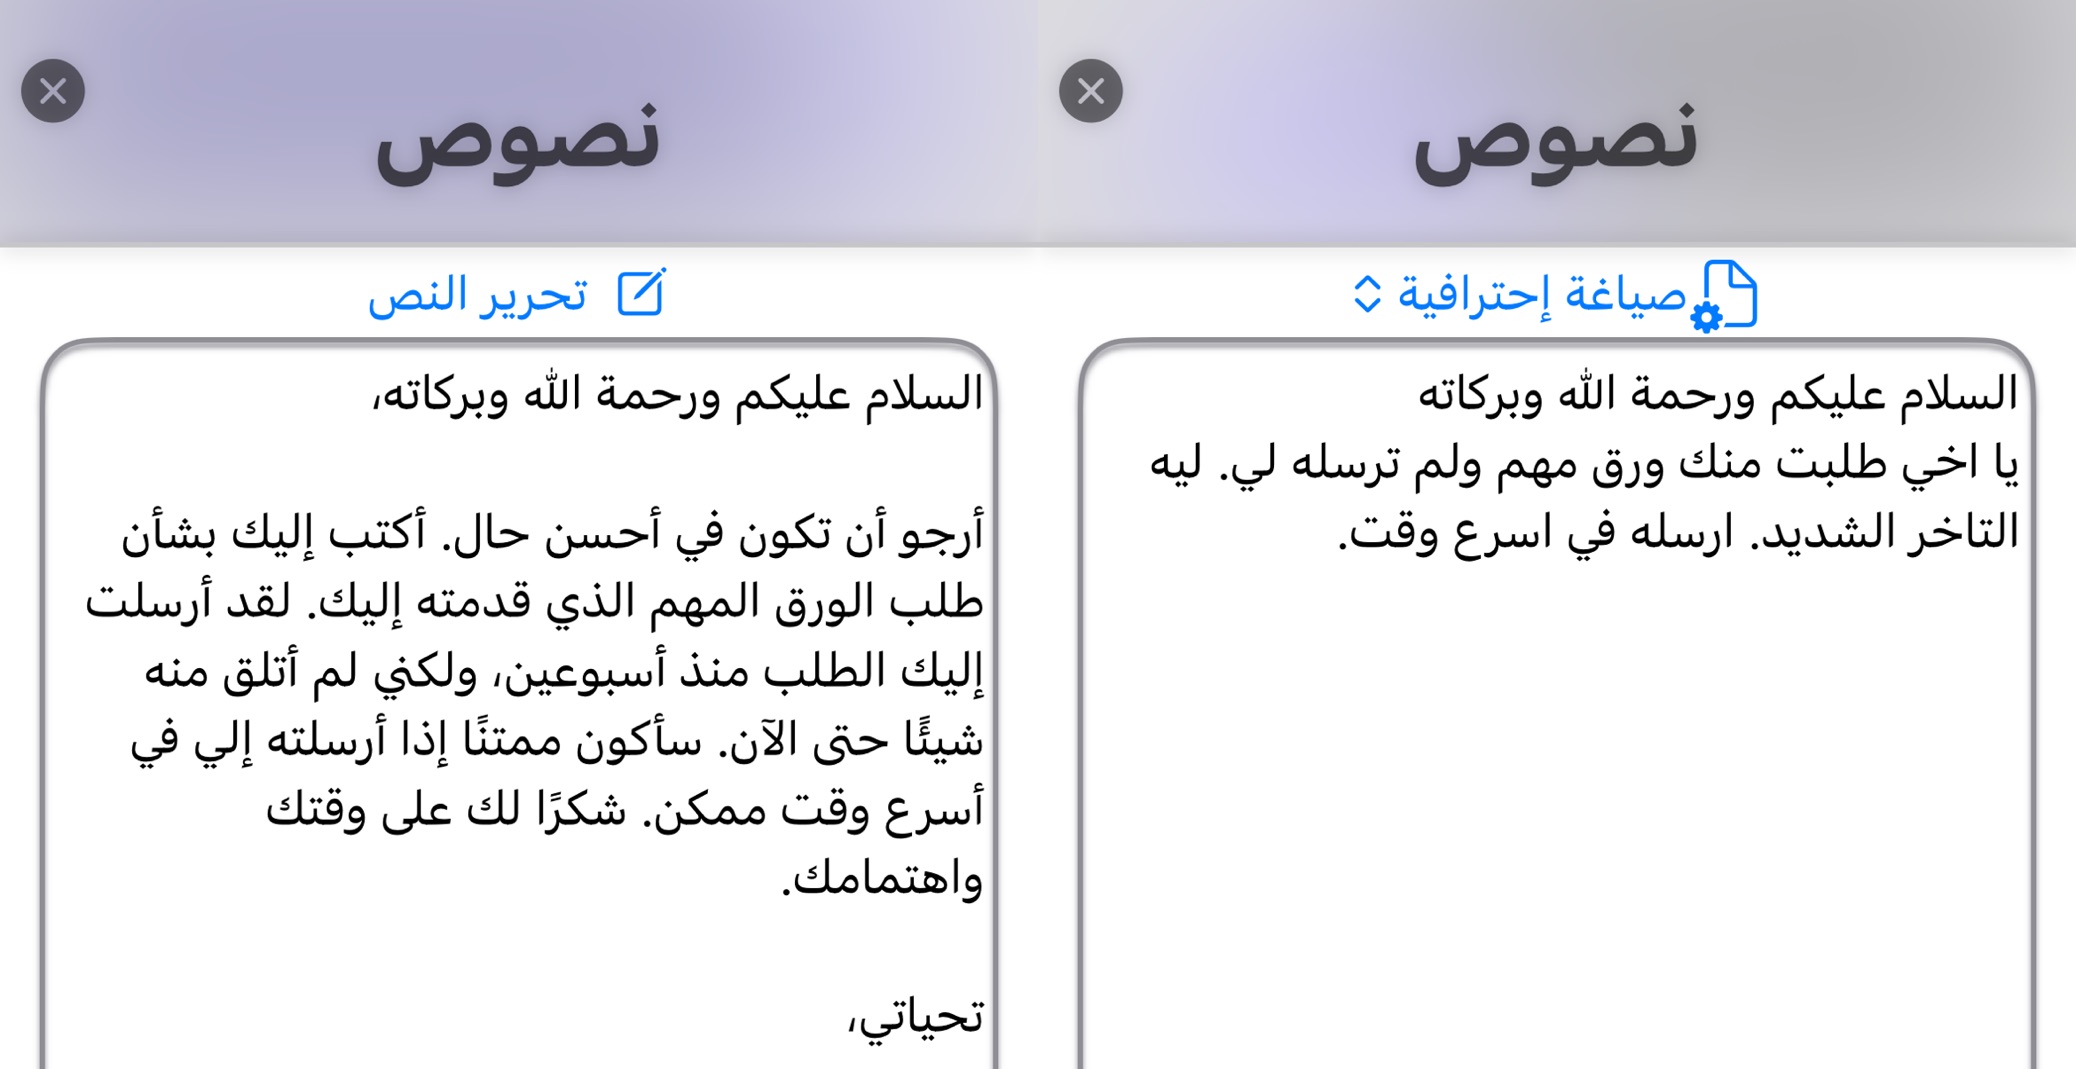 من iPhoneIslam.com، لقطة شاشة لجهاز iPhone يعرض "تطبيق فون إسلام" مع آخر التحديثات.